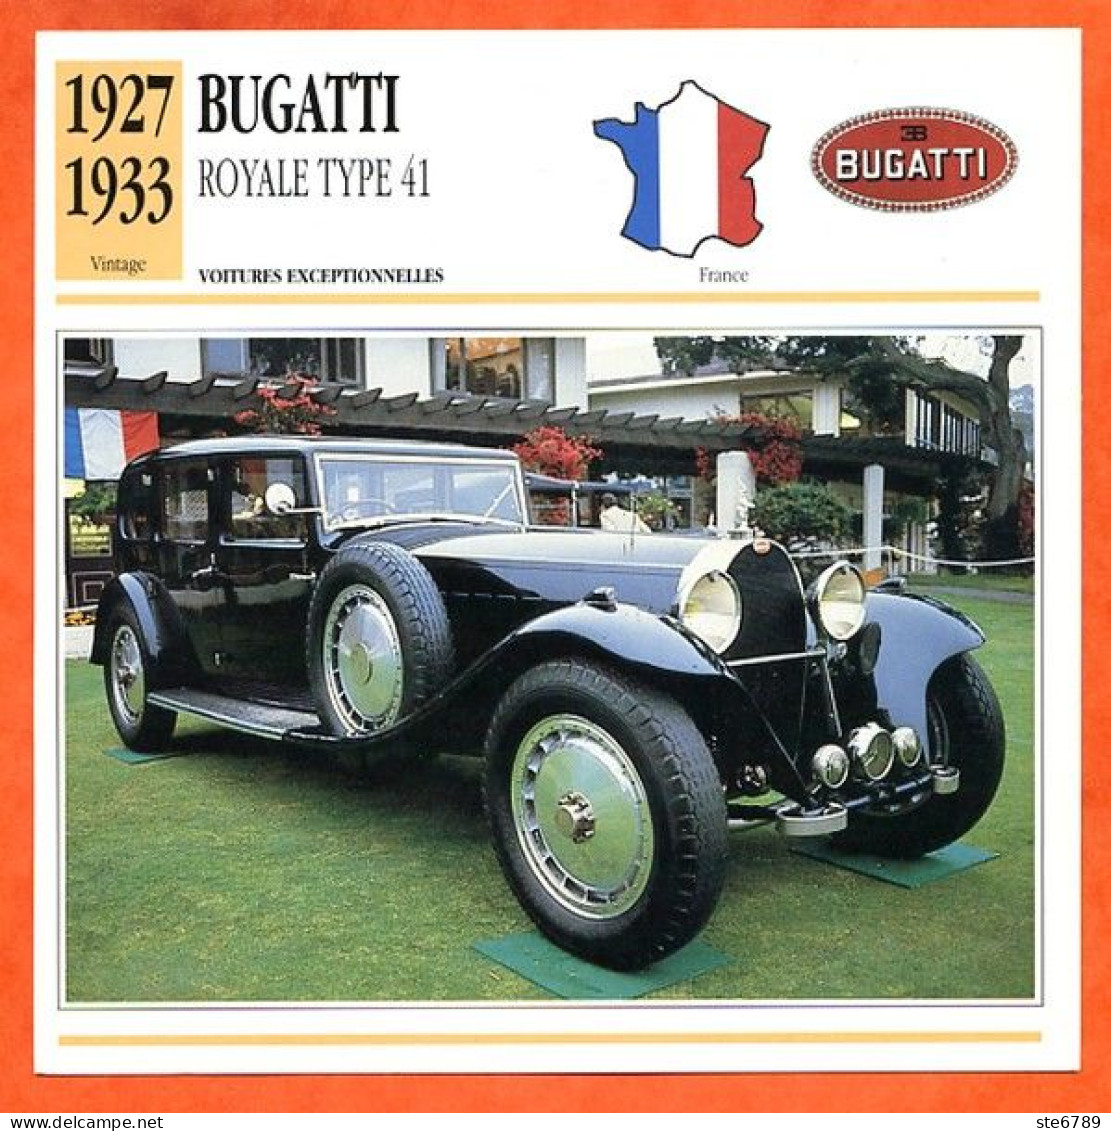 BUGATTI ROYALE TYPE 41  1927  Voiture  France  Auto Fiche Technique Automobile - Voitures